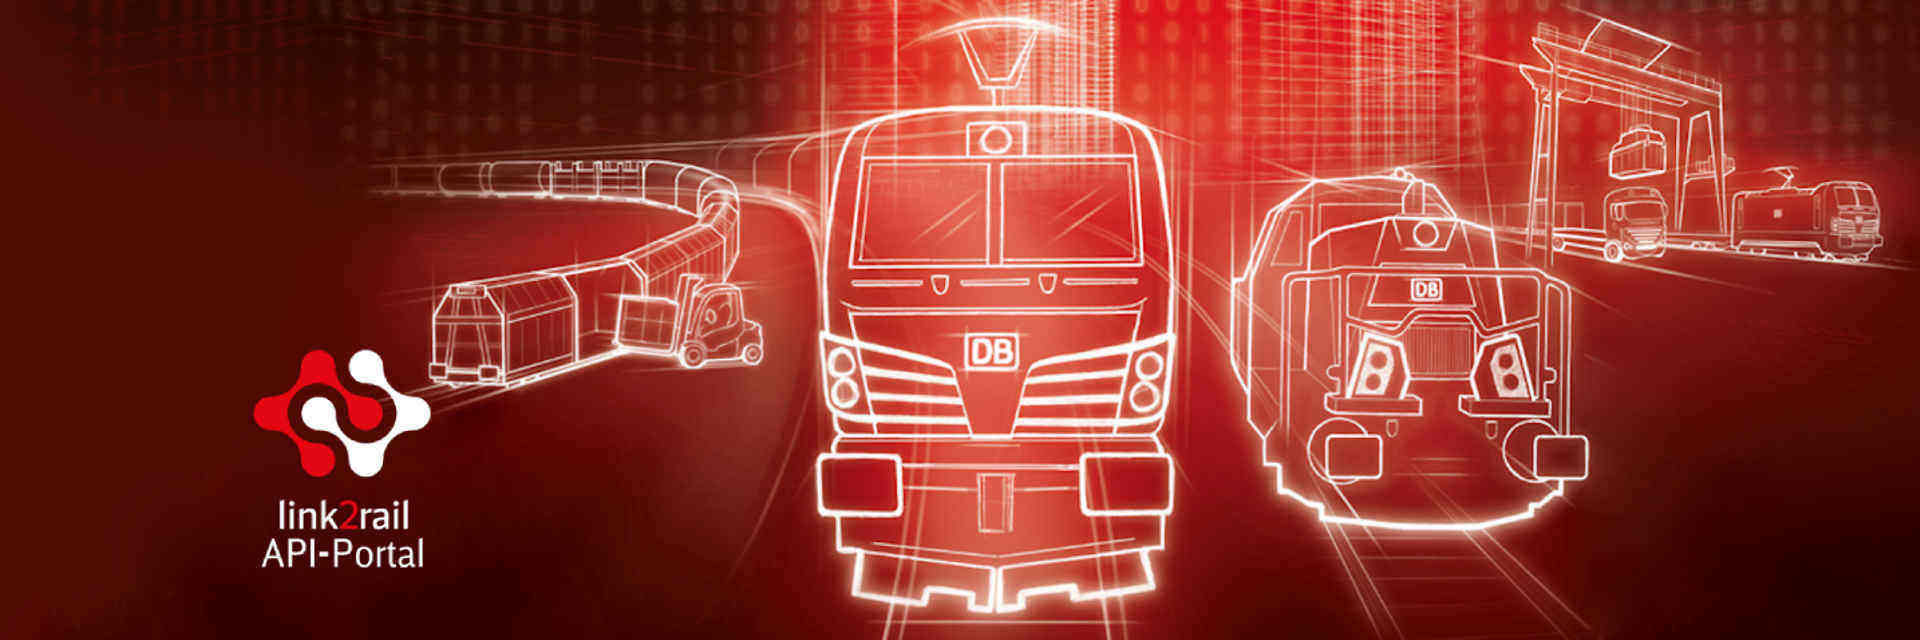 DB Cargo își extinde portofoiul de servicii digitale cu link2rail